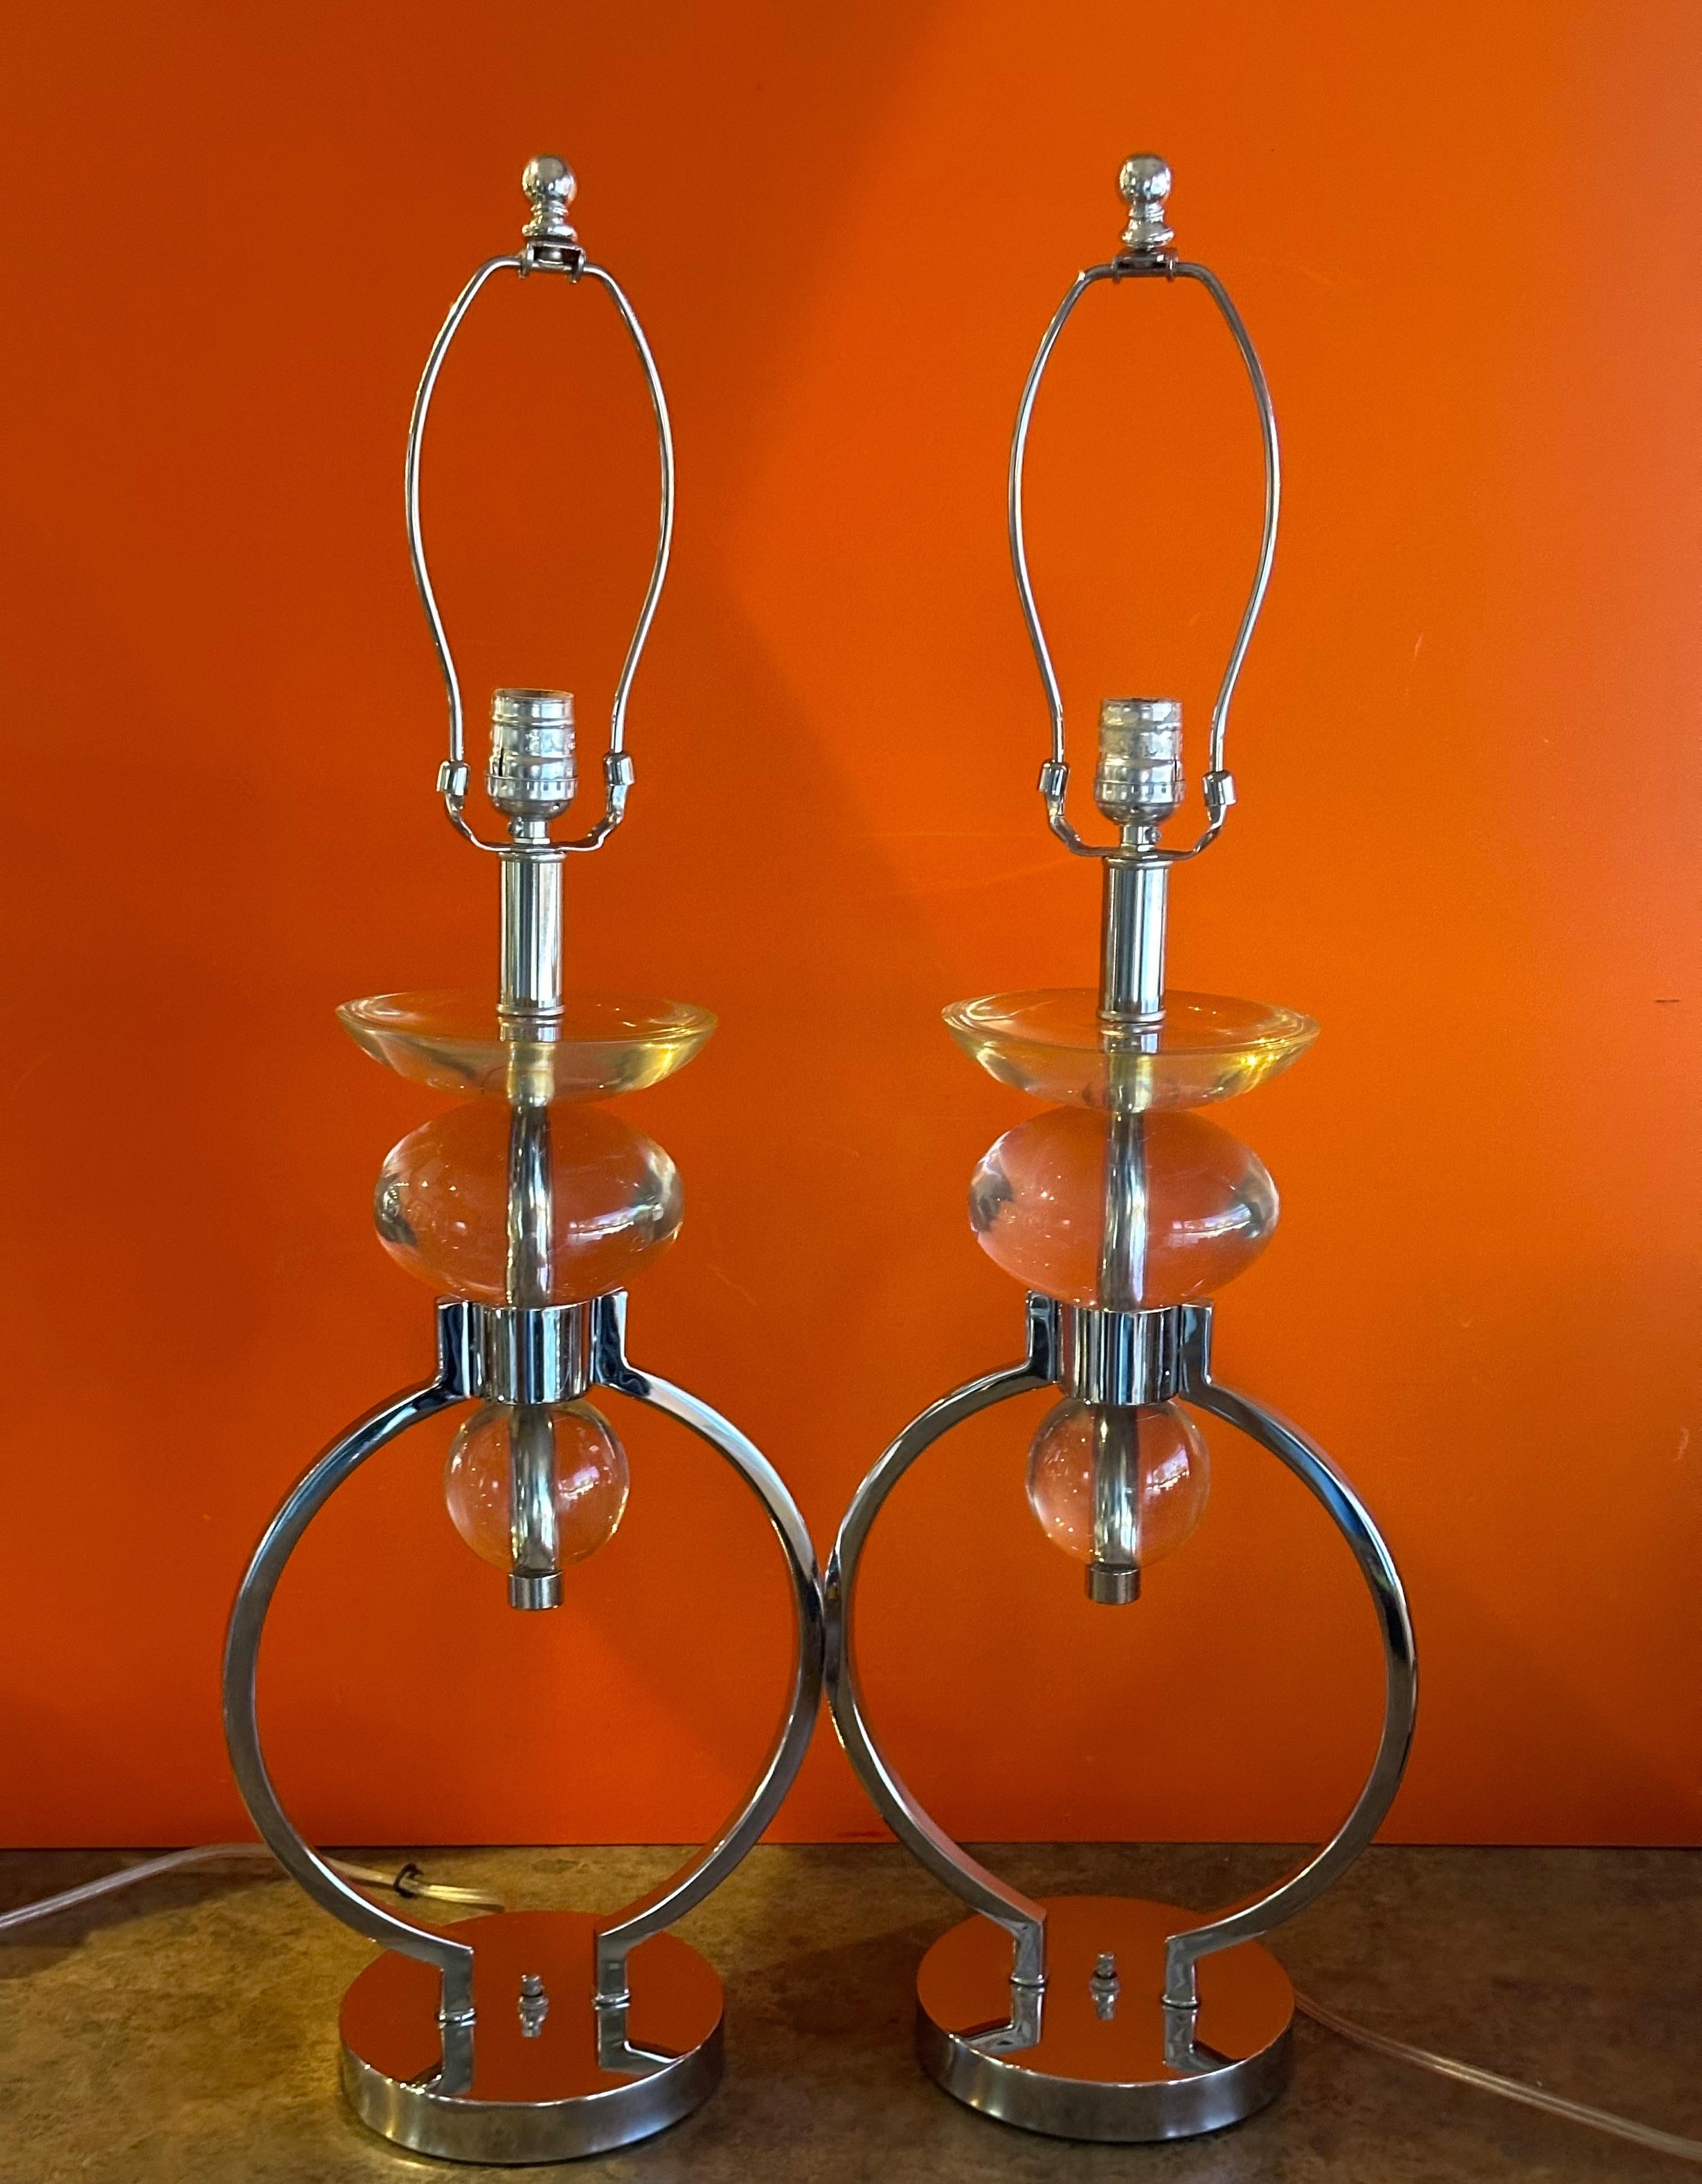 Wunderschönes Paar MCM Tischlampen aus Chrom und Lucit von Hivo Van Teal, ca. 1970er Jahre. Diese schönen Lampen sind in gutem Zustand und messen 9,5 B x 6